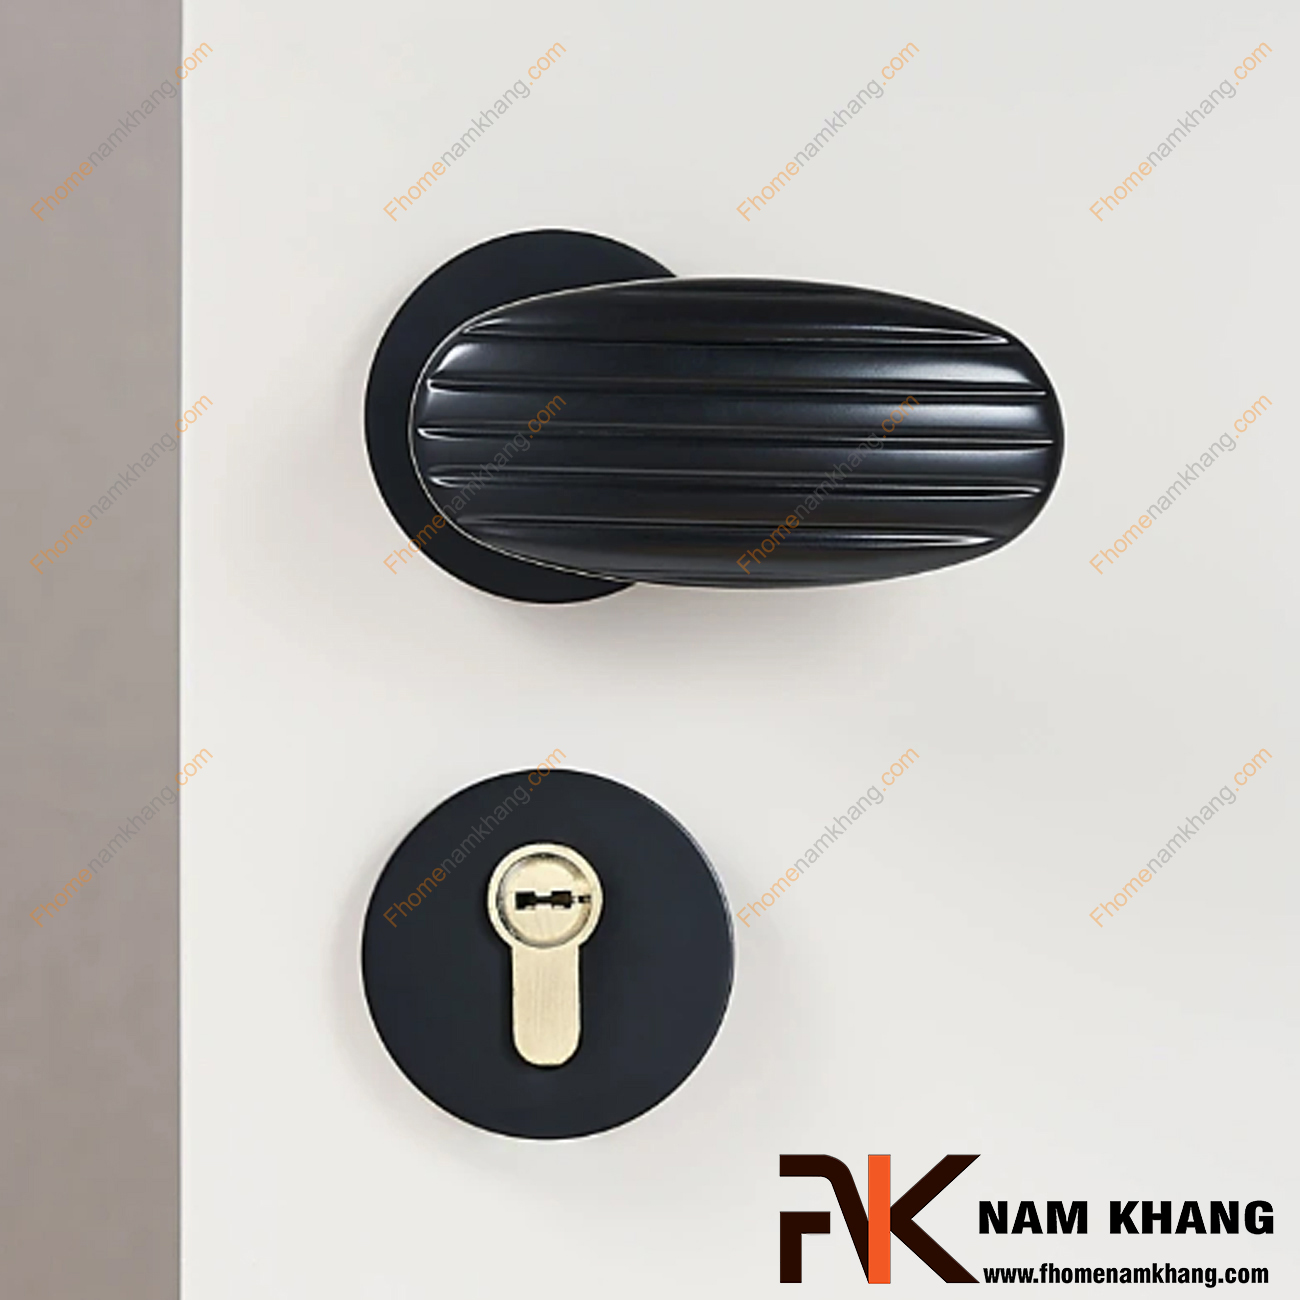 Khóa cửa phân thể hiện đại hoạt động bằng nam châm màu đen NK578-DM có thiết kế cách điệu, đường nét mềm mại, mang giá trị thẩm mĩ cao.